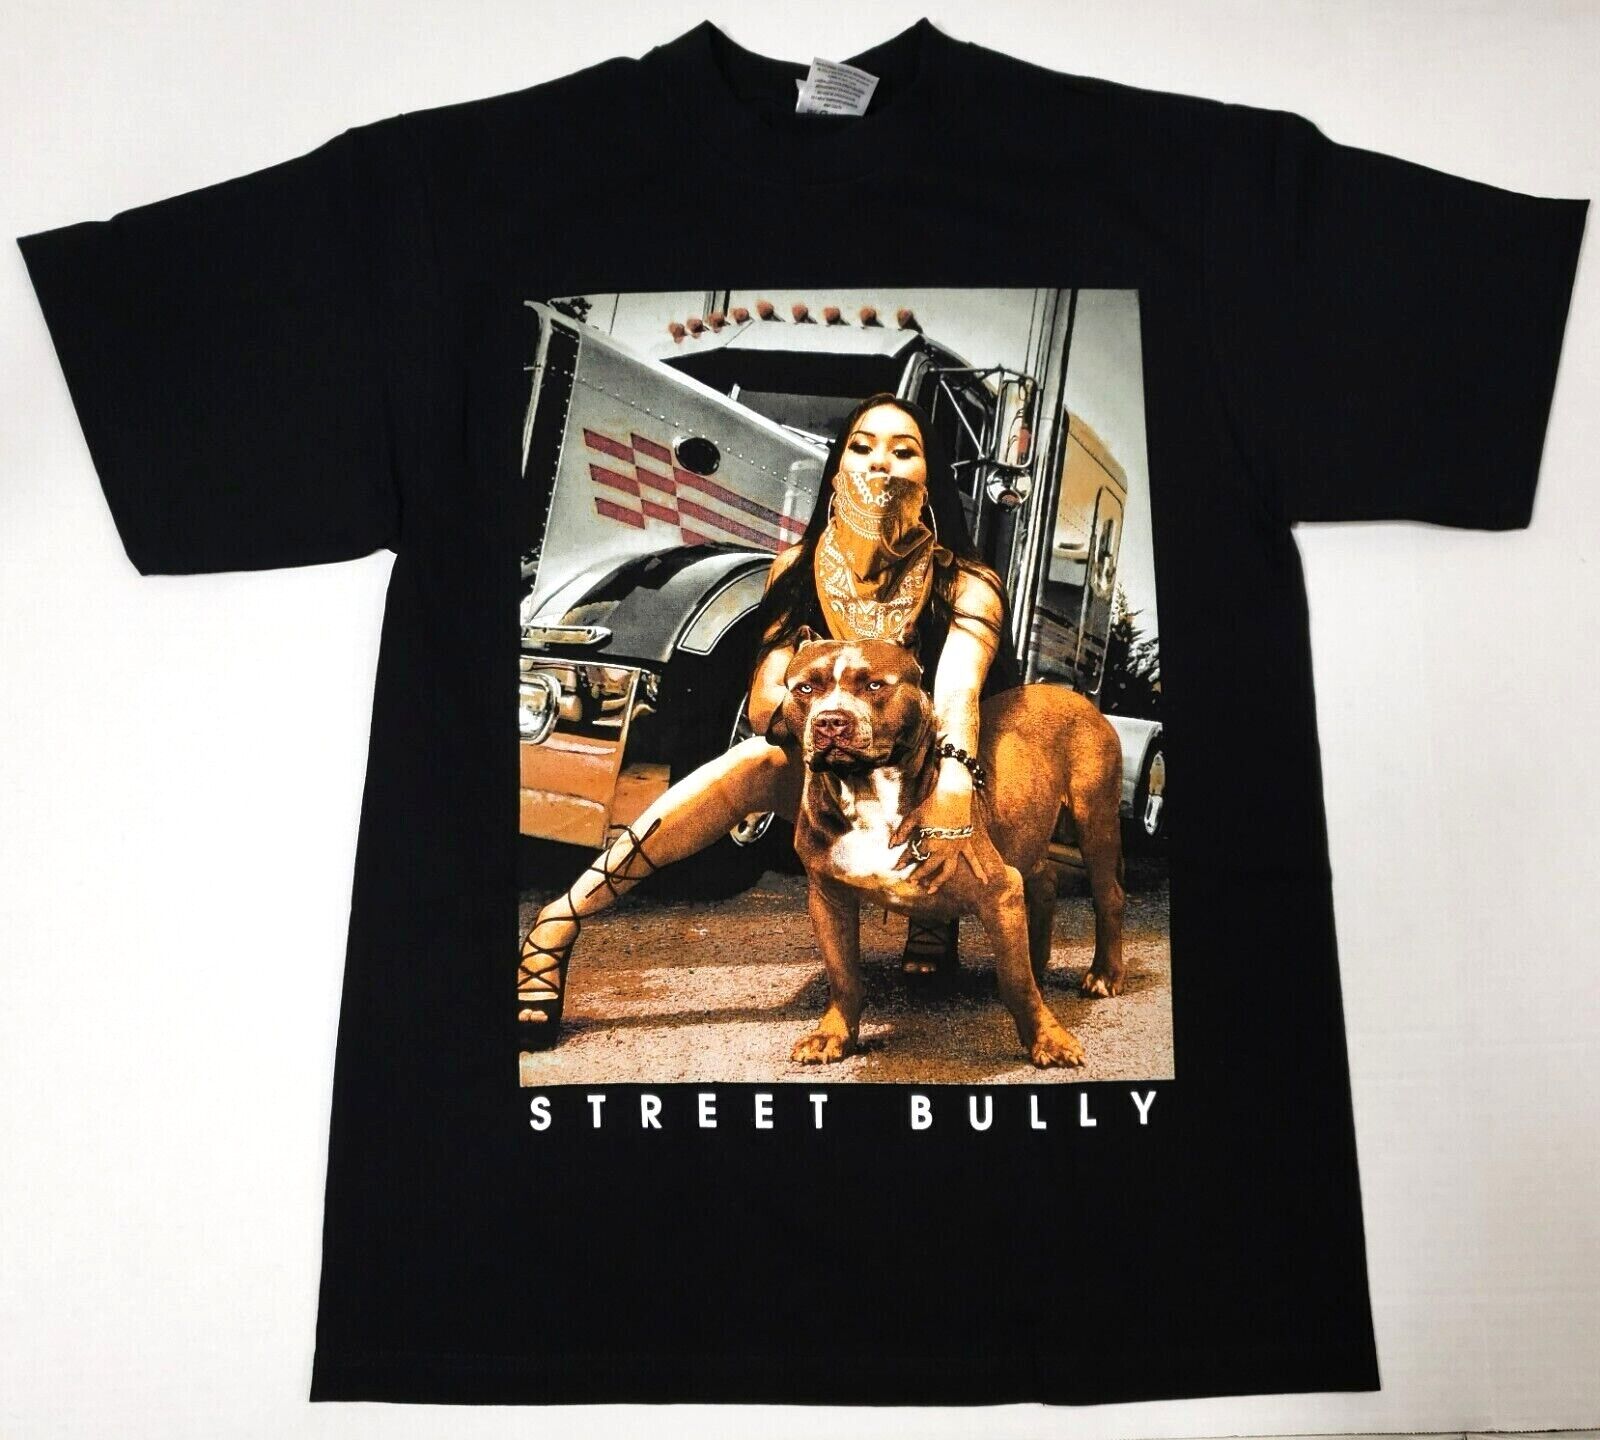 STREET BULLY T-shirt Pit Bull Urban Streetwear Men's Tee Black New